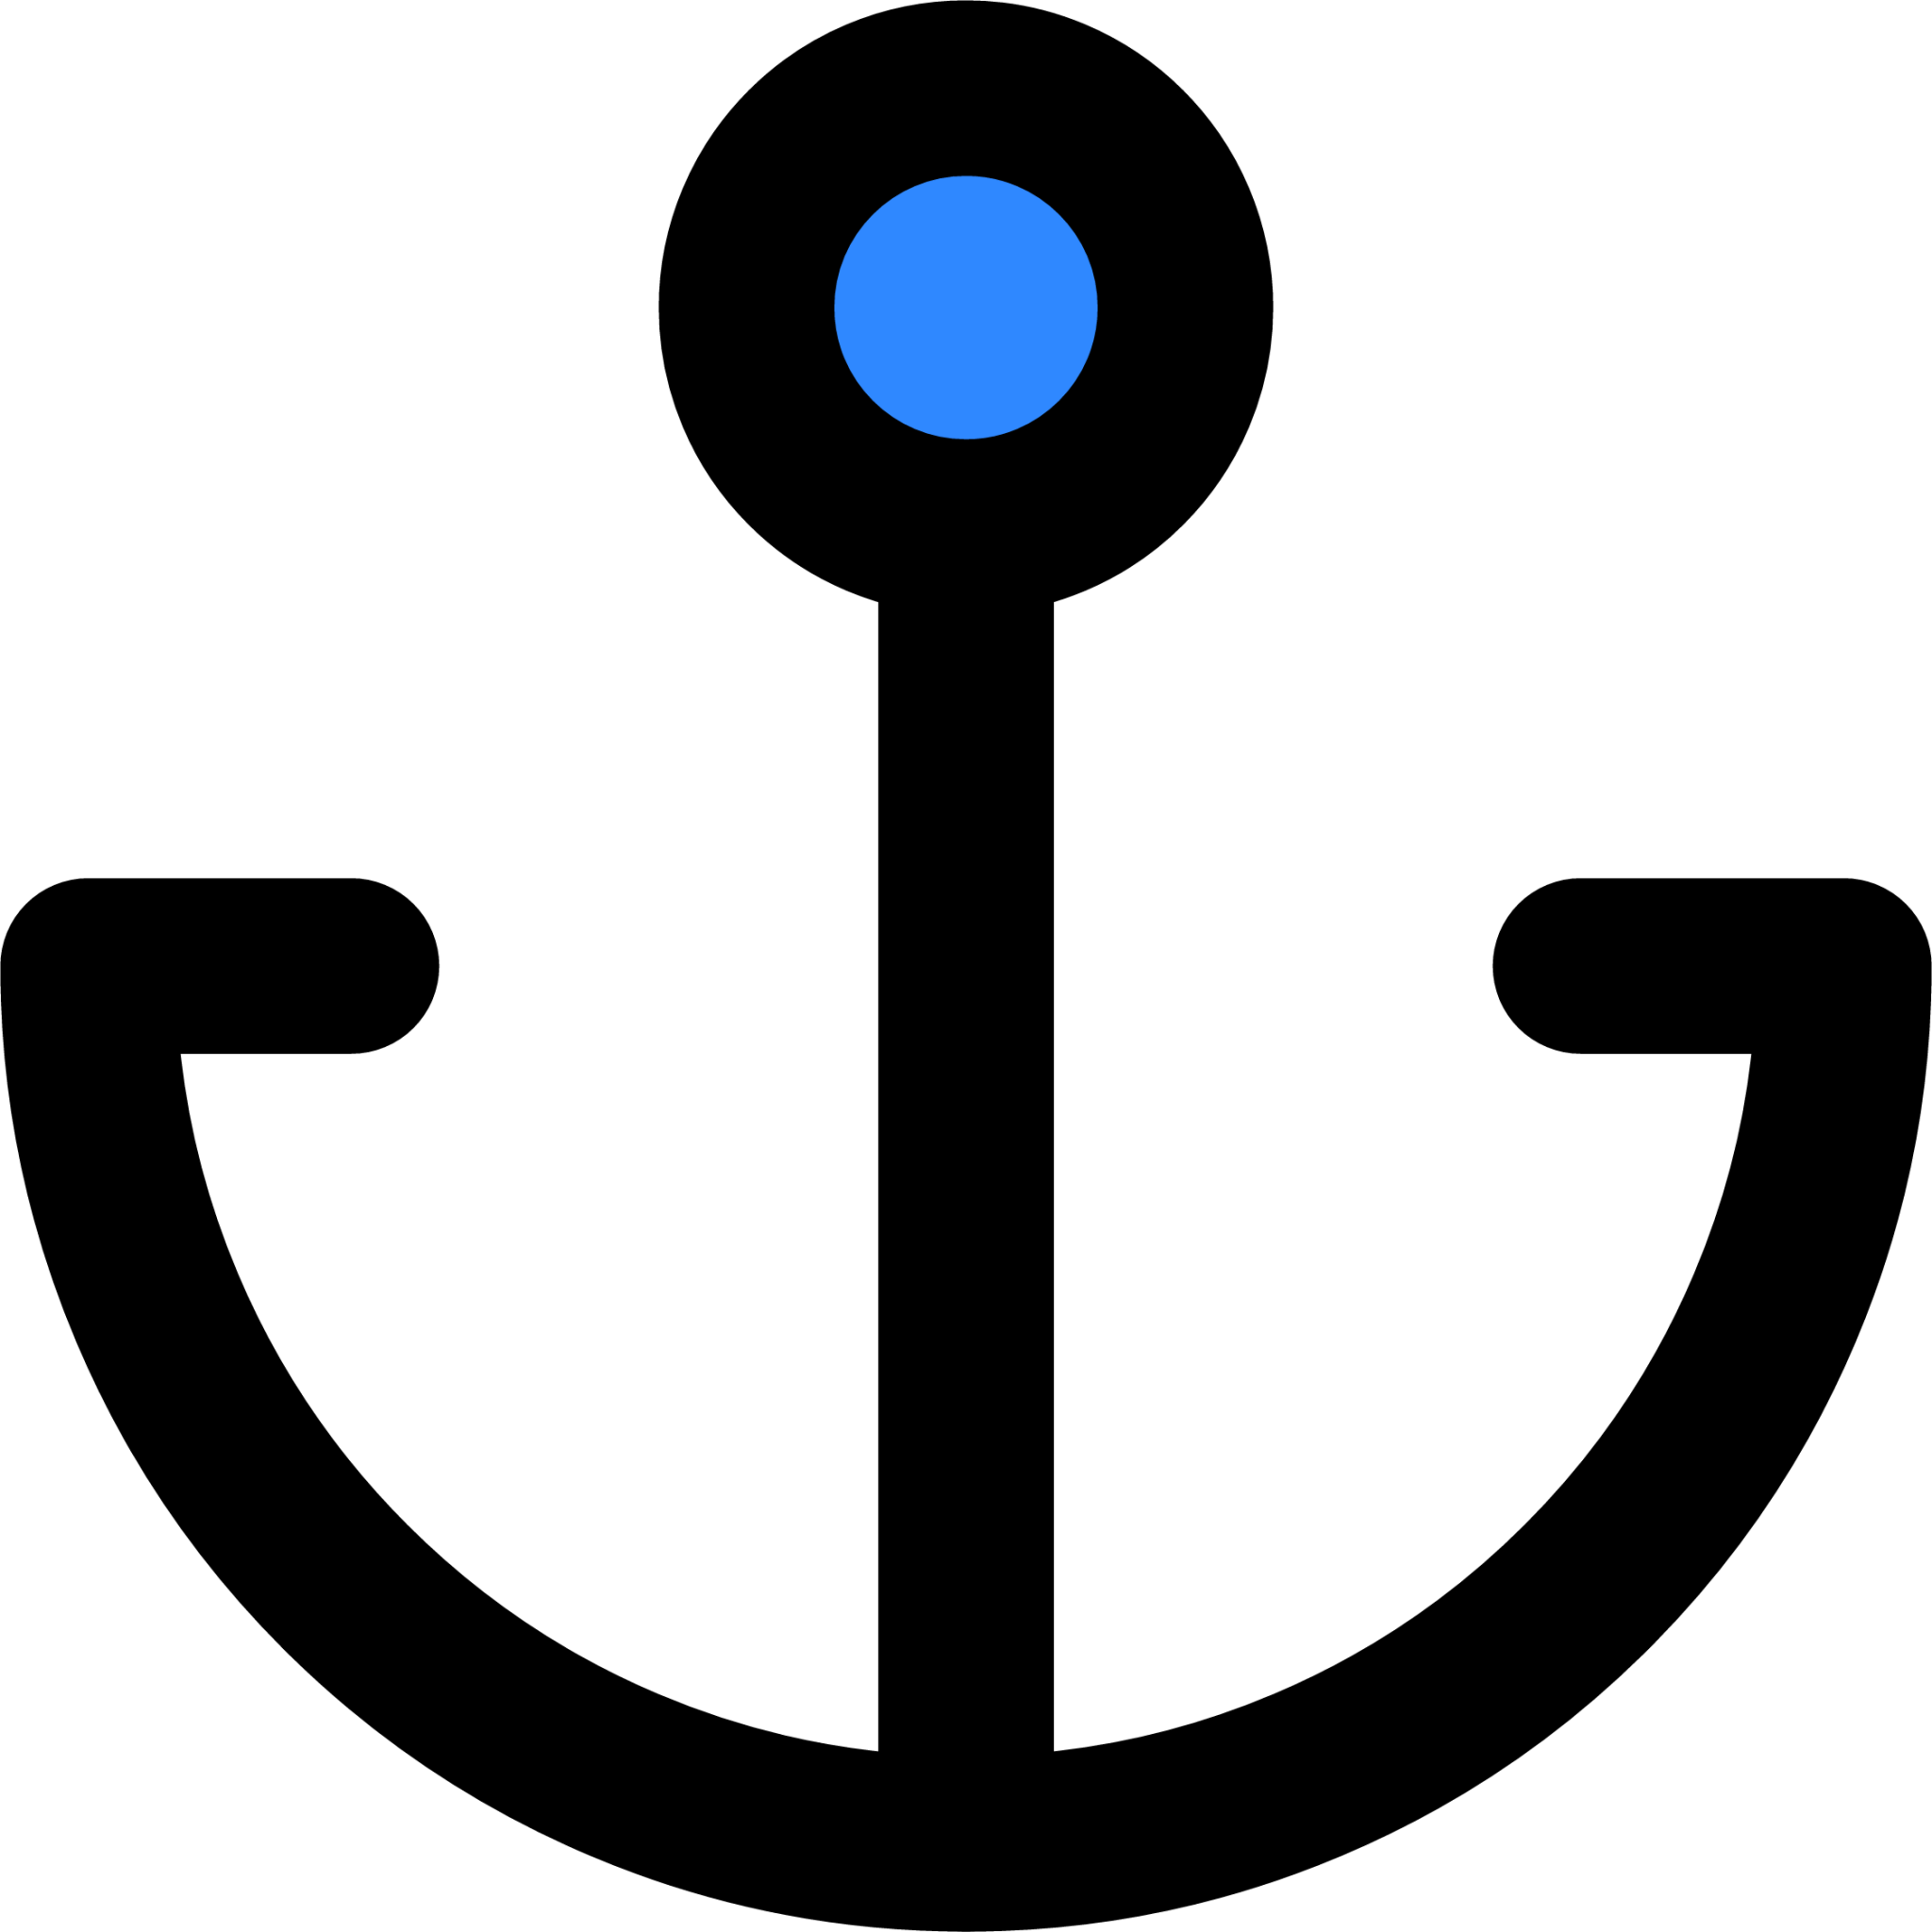 anchor two icon